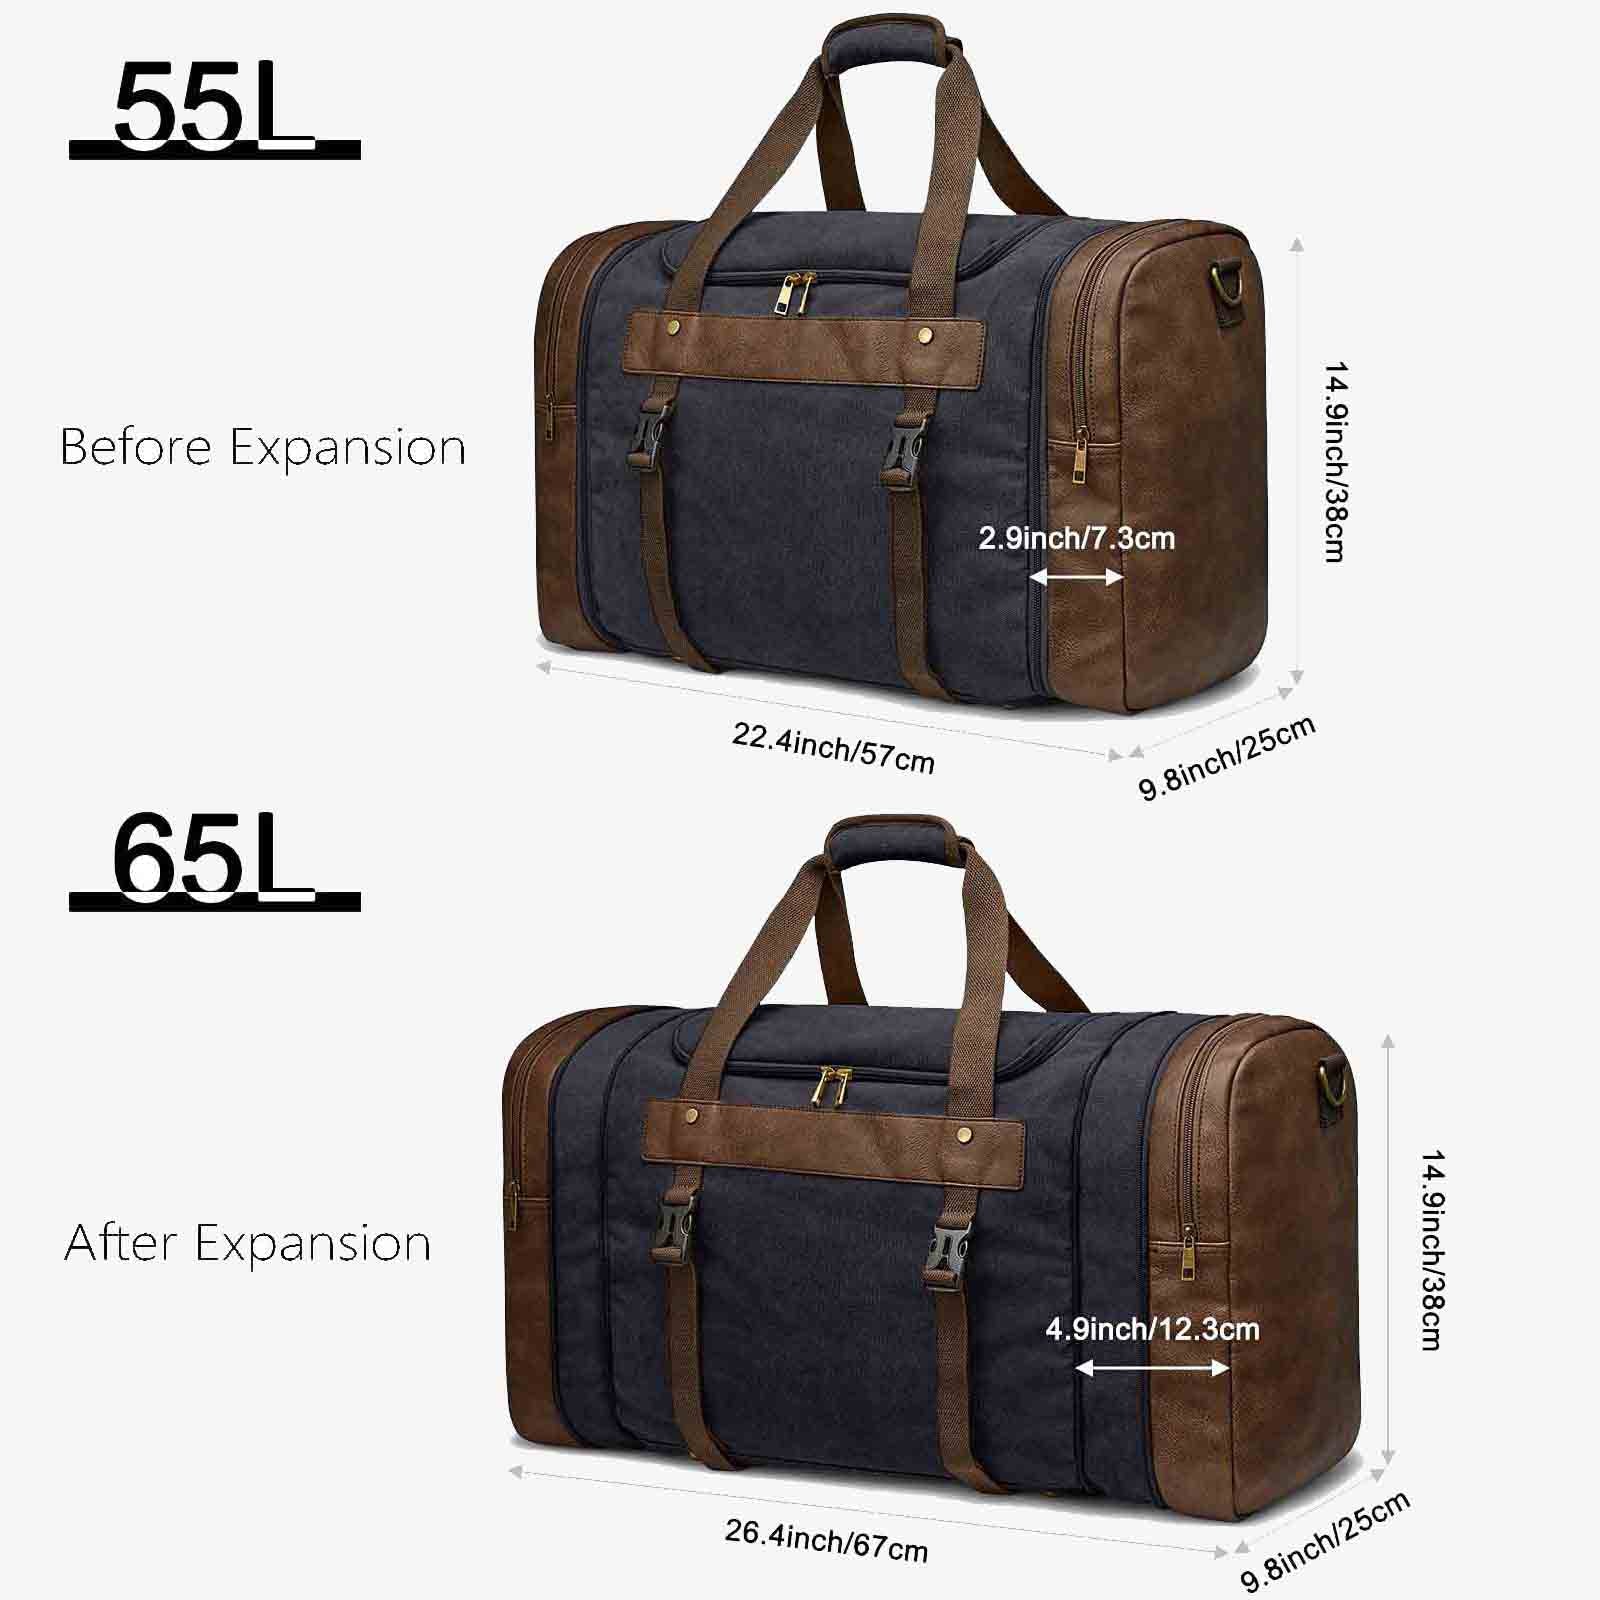 55L Canvas Duffel Bag Expansion Compartment